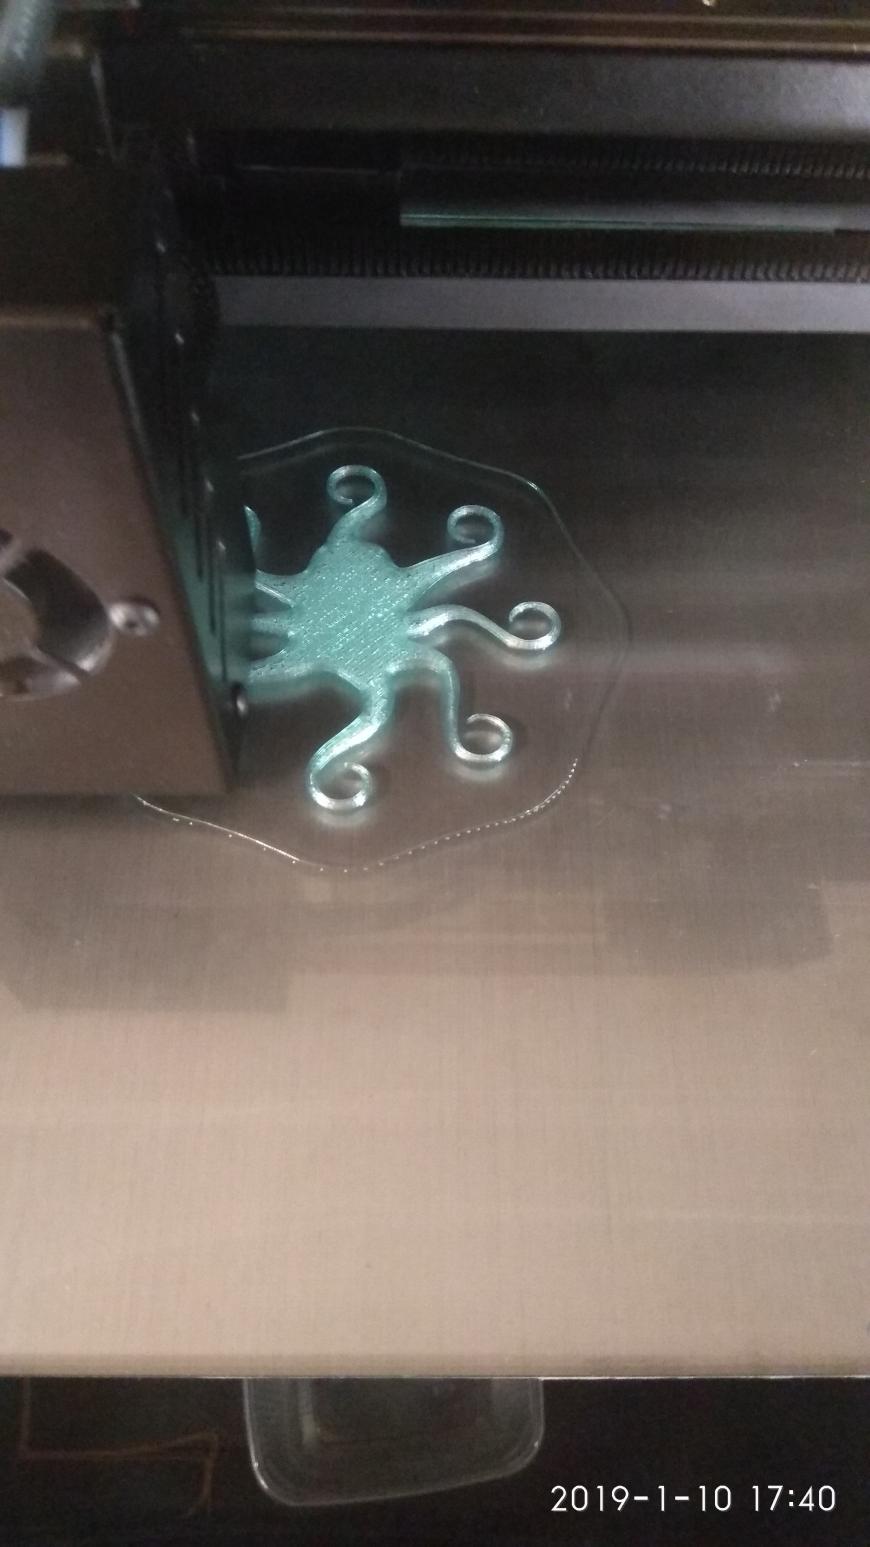 Краткий обзор 3D принтера CyberDragon